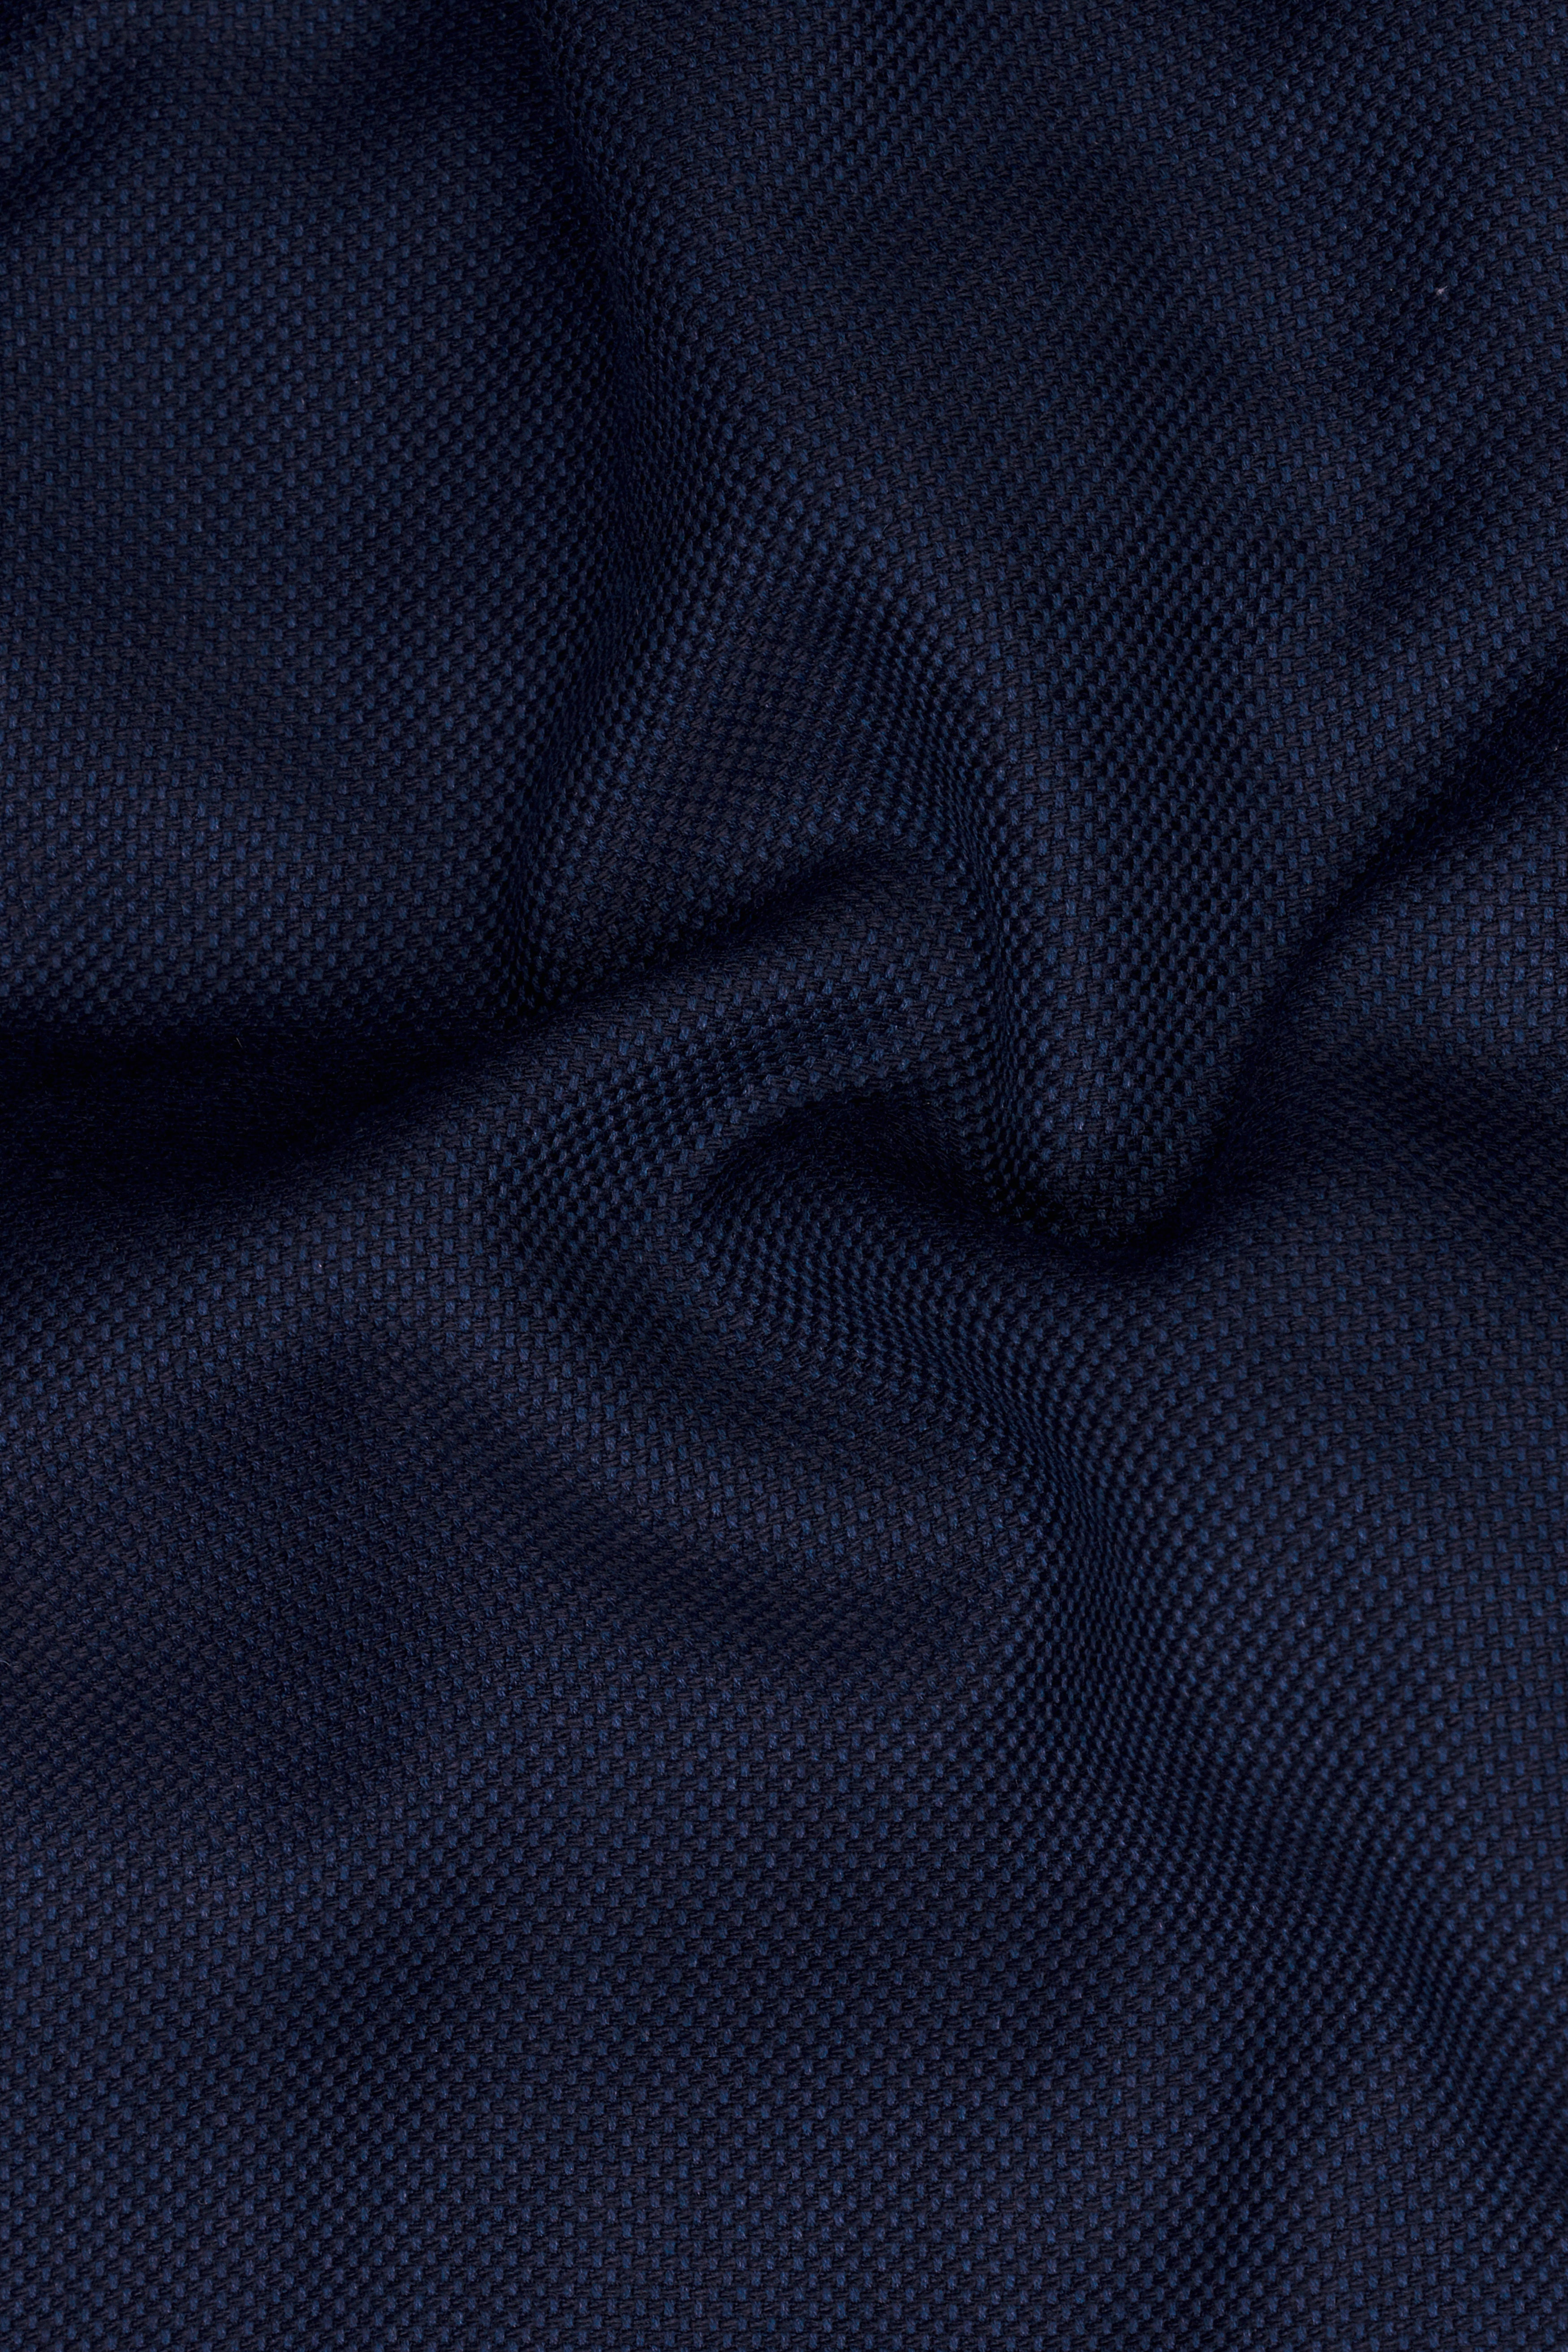 Berkeley Blue Wool Rich Pant T2820-28, T2820-30, T2820-32, T2820-34, T2820-36, T2820-38, T2820-40, T2820-42, T2820-44